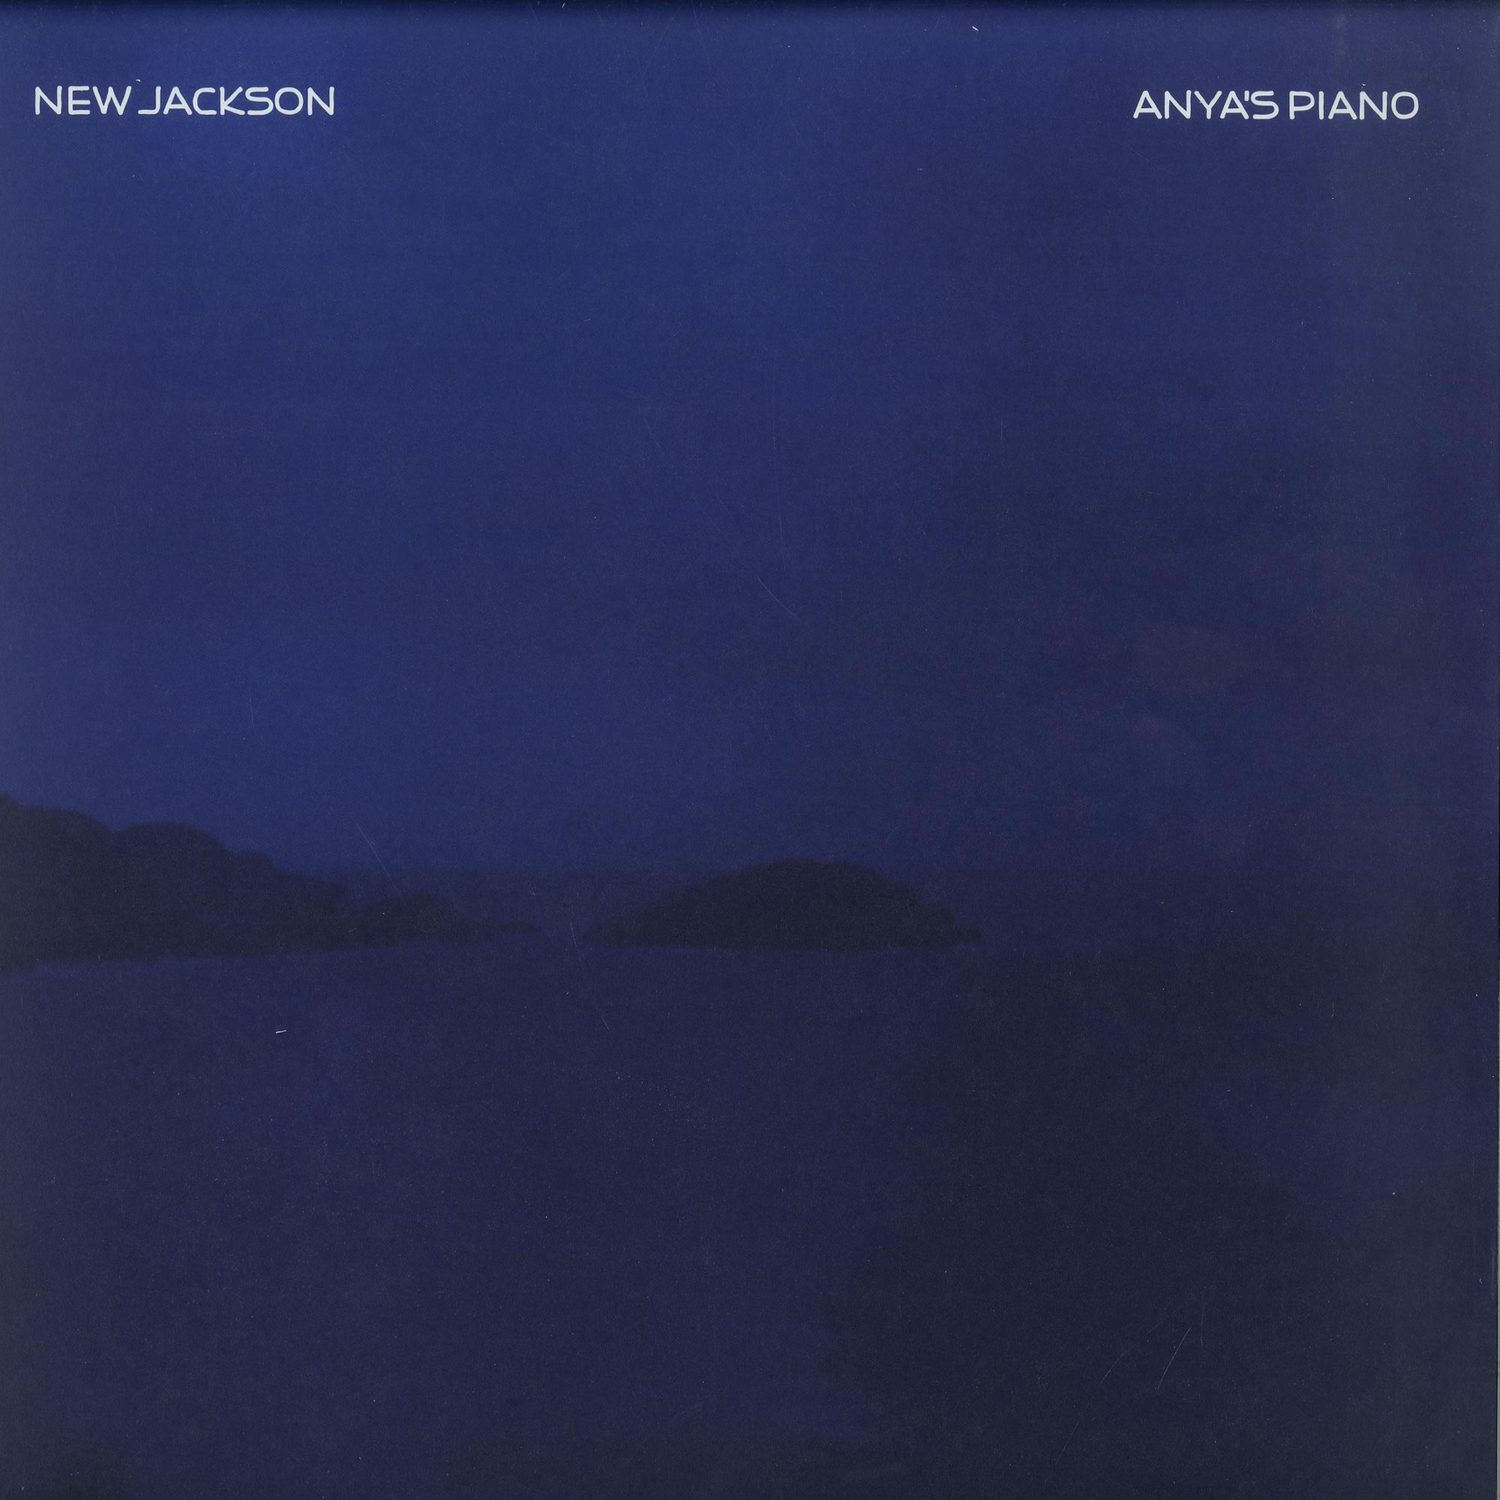 New Jackson - ANYAS PIANO